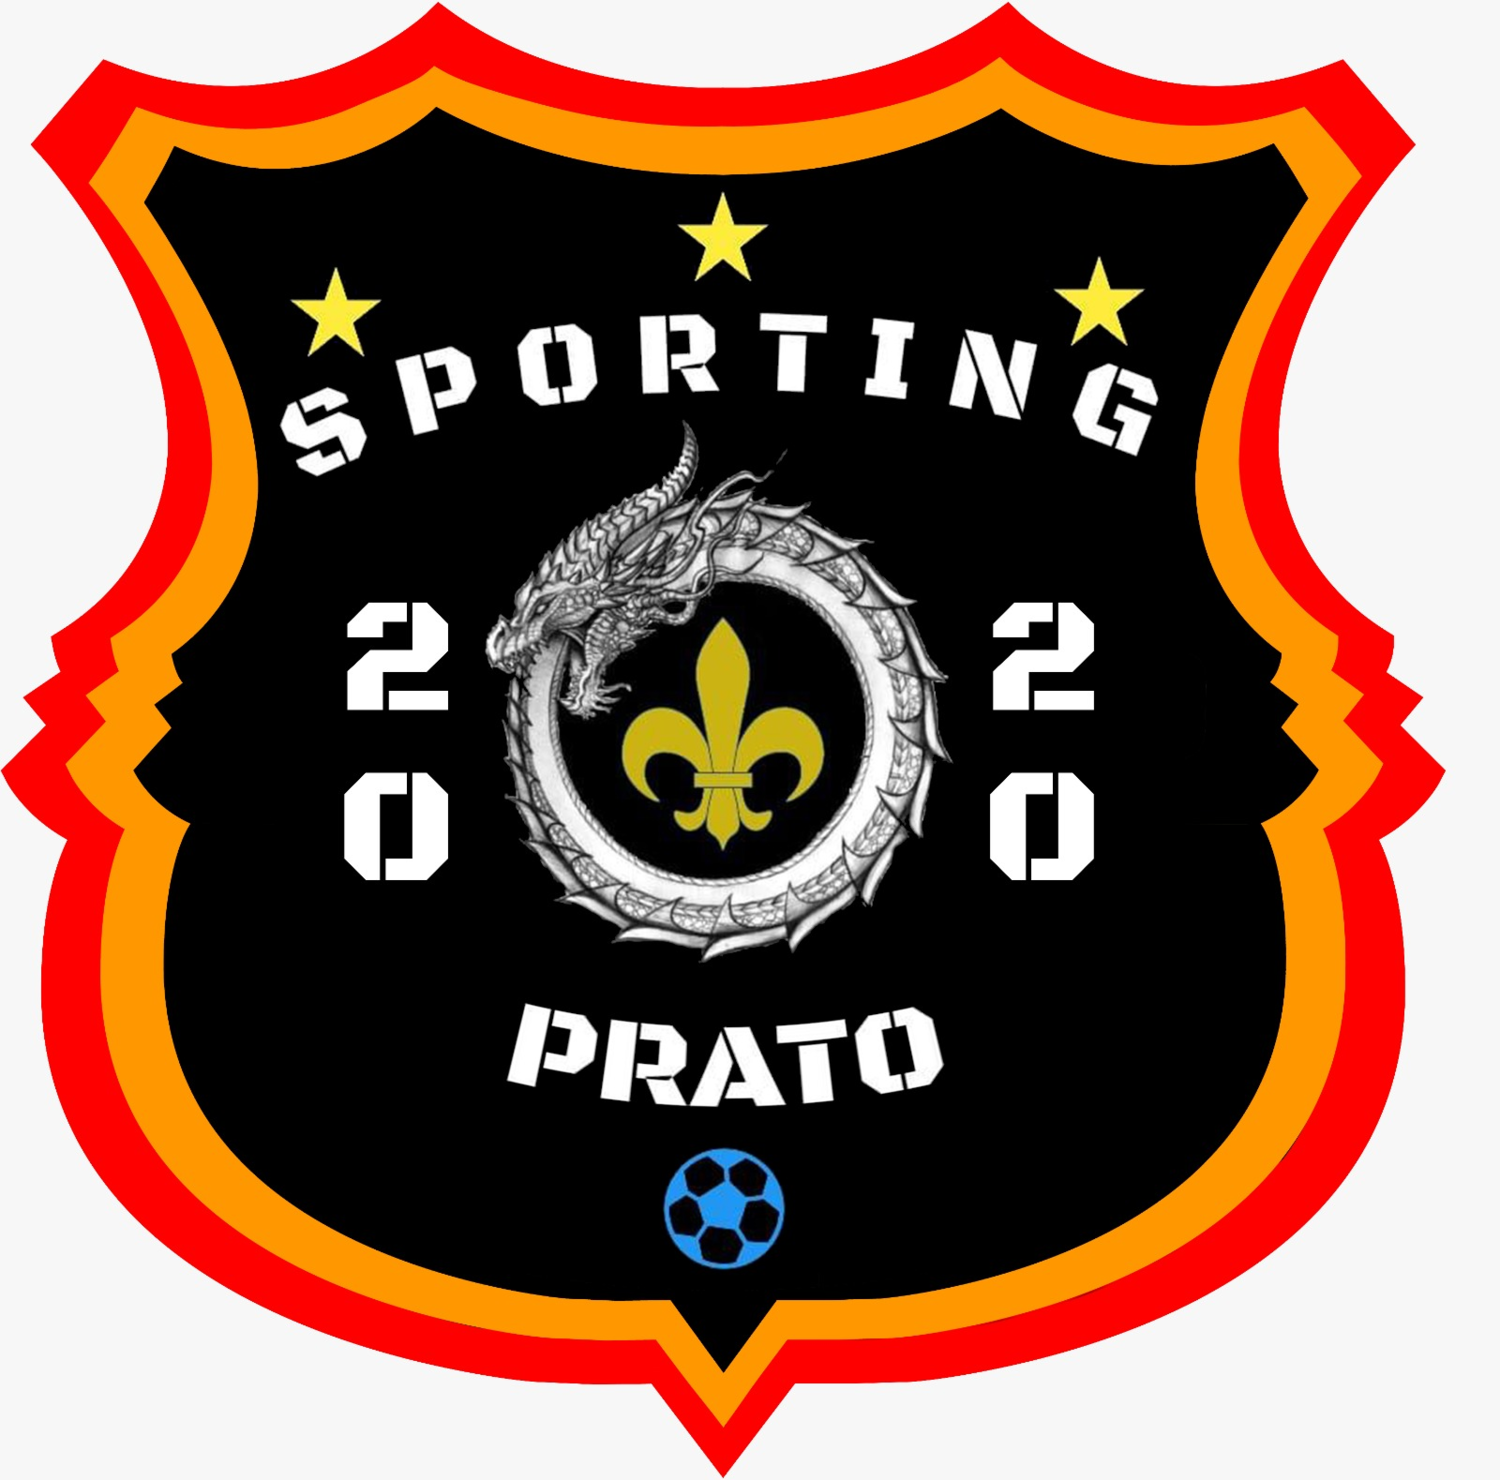 Sporting Prato 2020